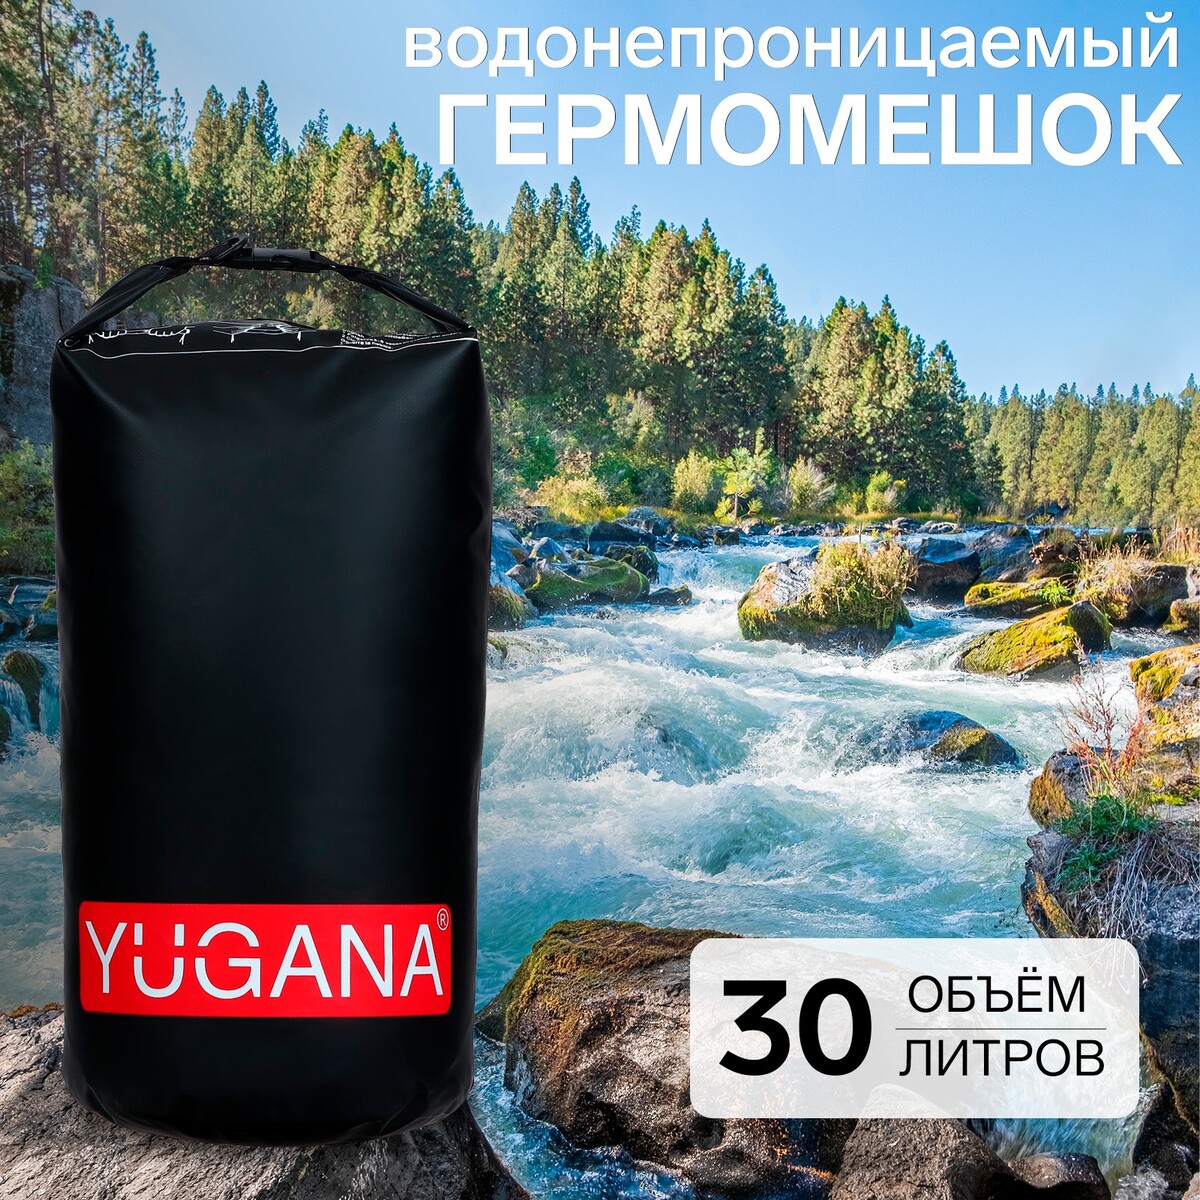 Гермомешок yugana, пвх, водонепроницаемый 30 литров, один ремень, черный еще один год в провансе